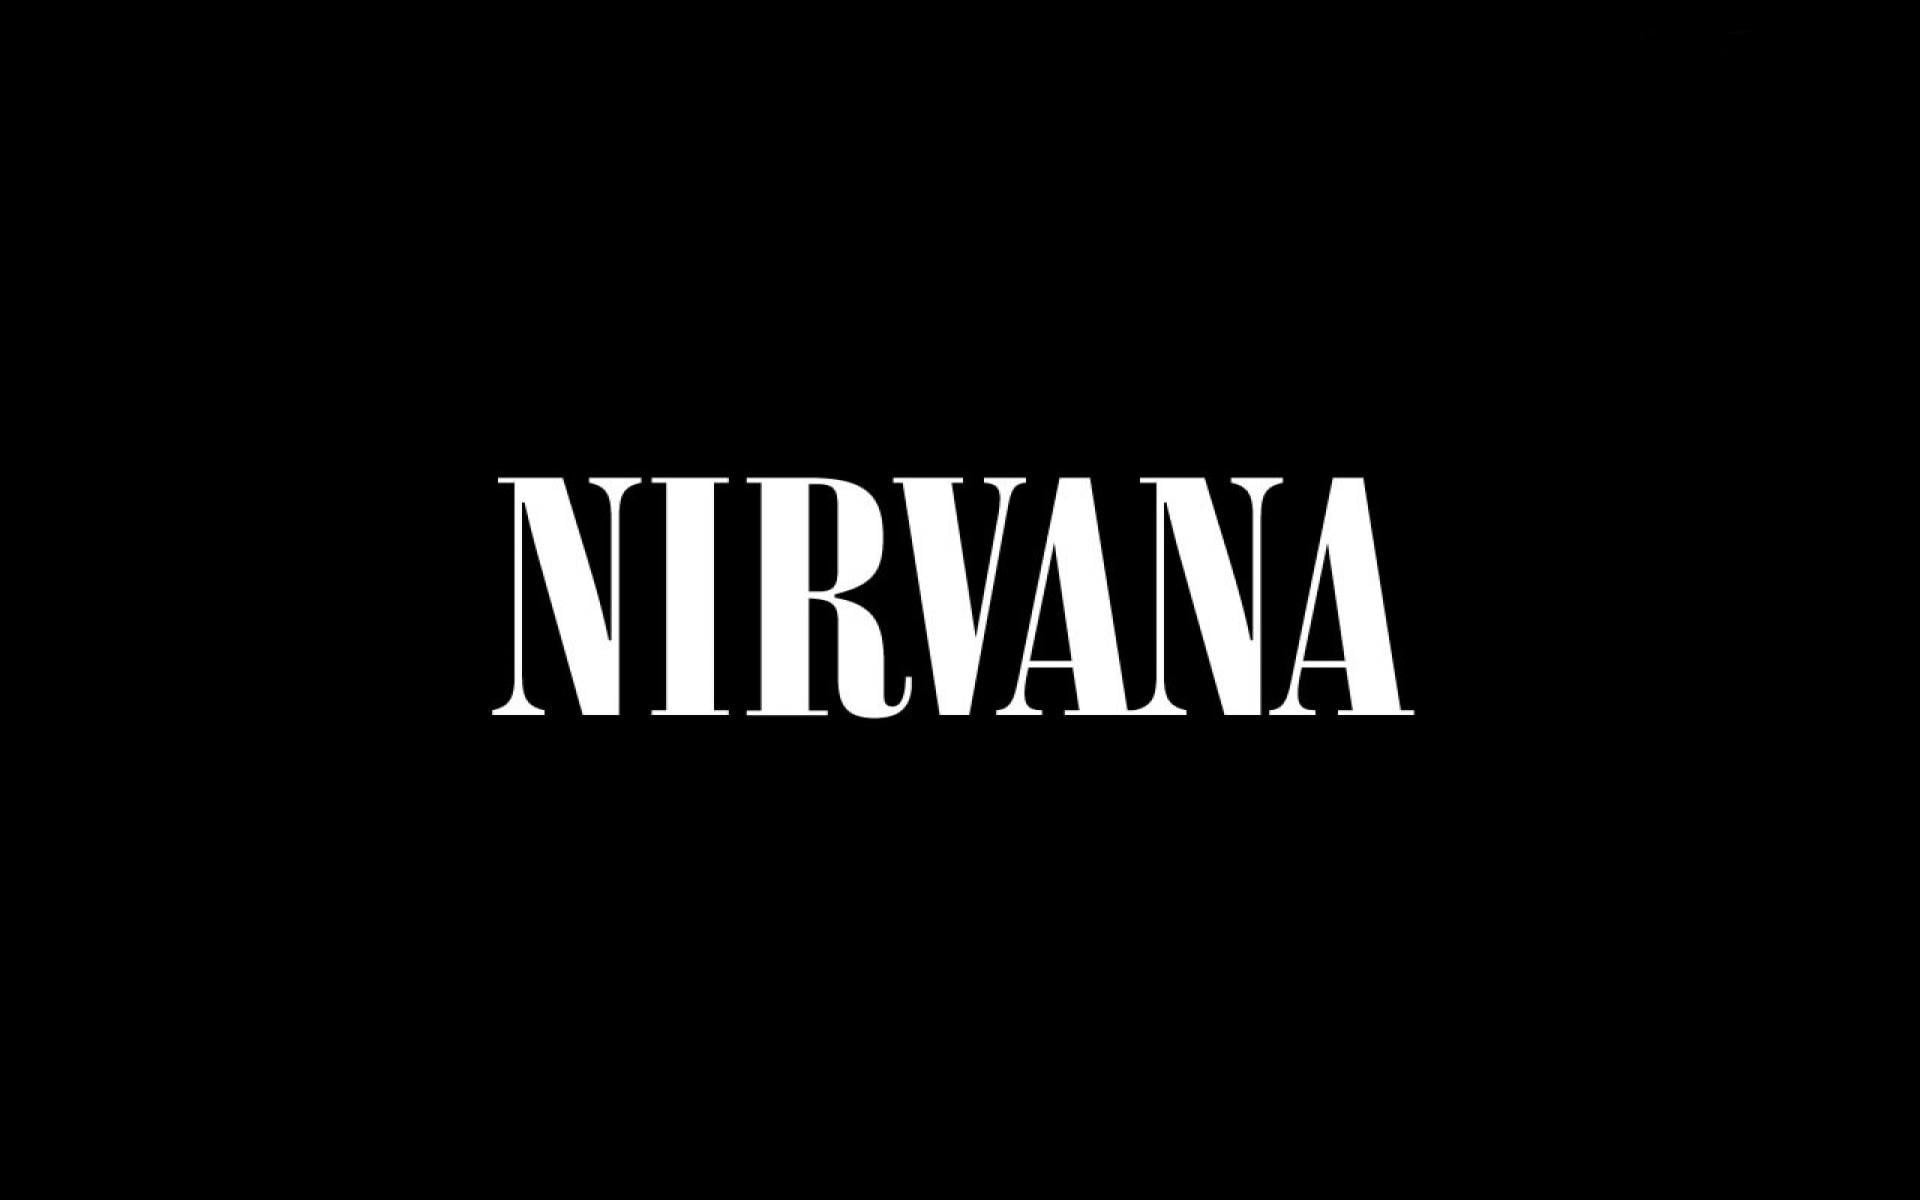 Nirvana text, sign, font, background, letters, black Color, illustration